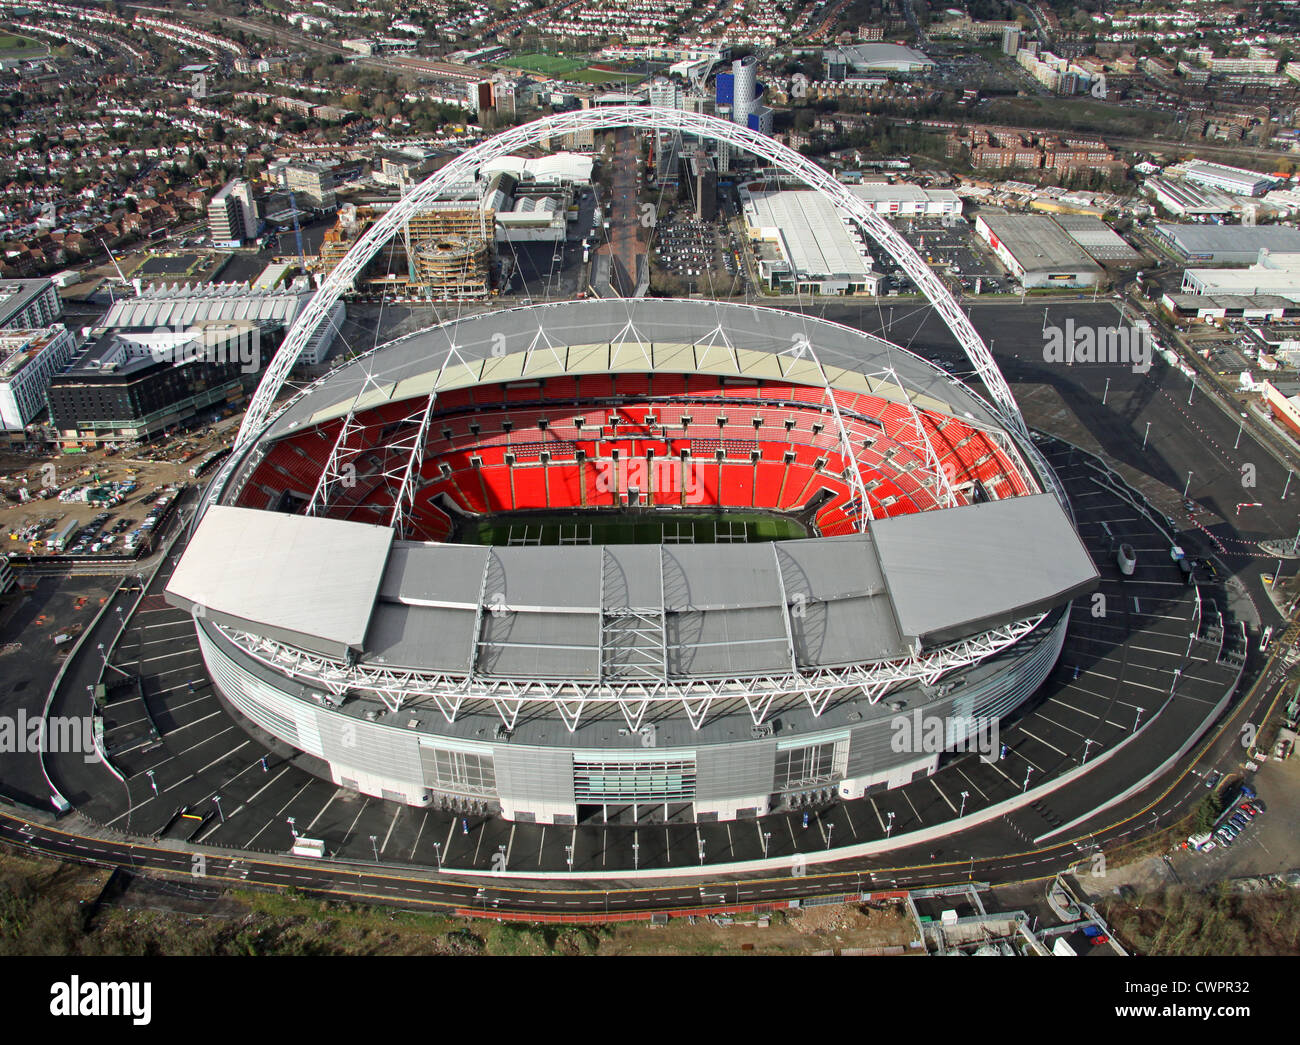 Vista aérea del estadio de Wembley, Londres Foto de stock